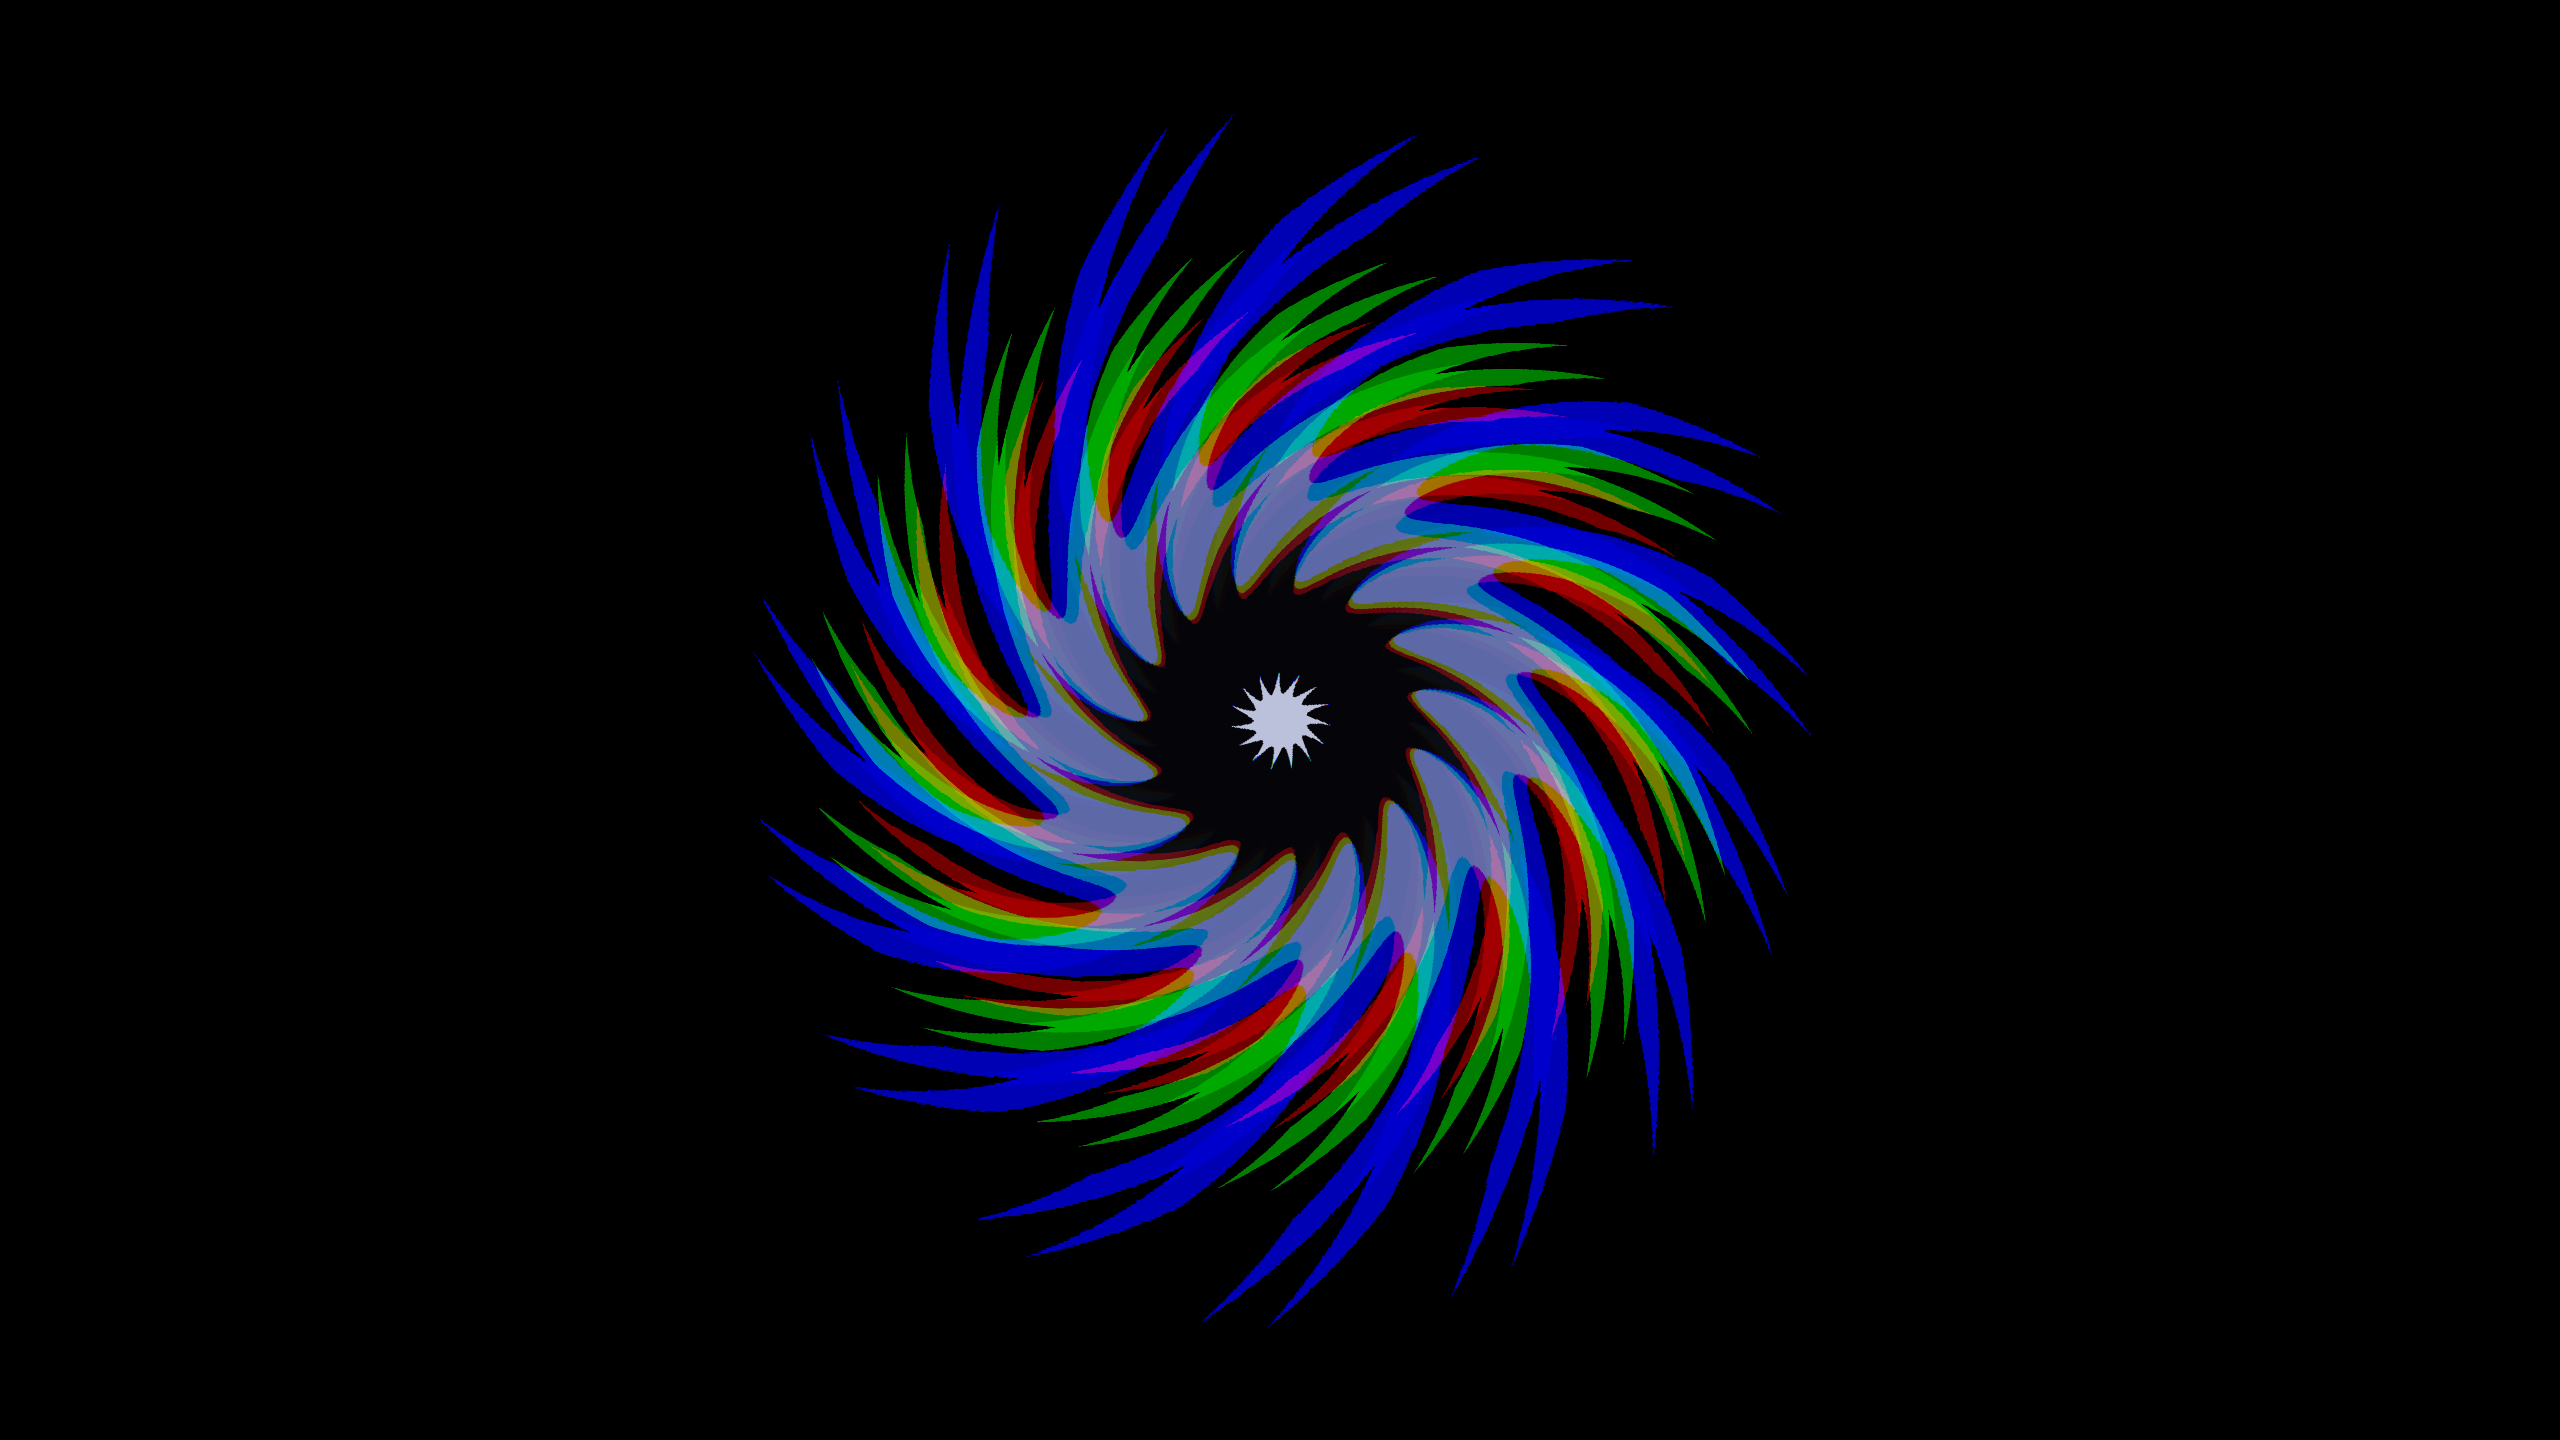 Artistic Digital Art Swirl 2560x1440